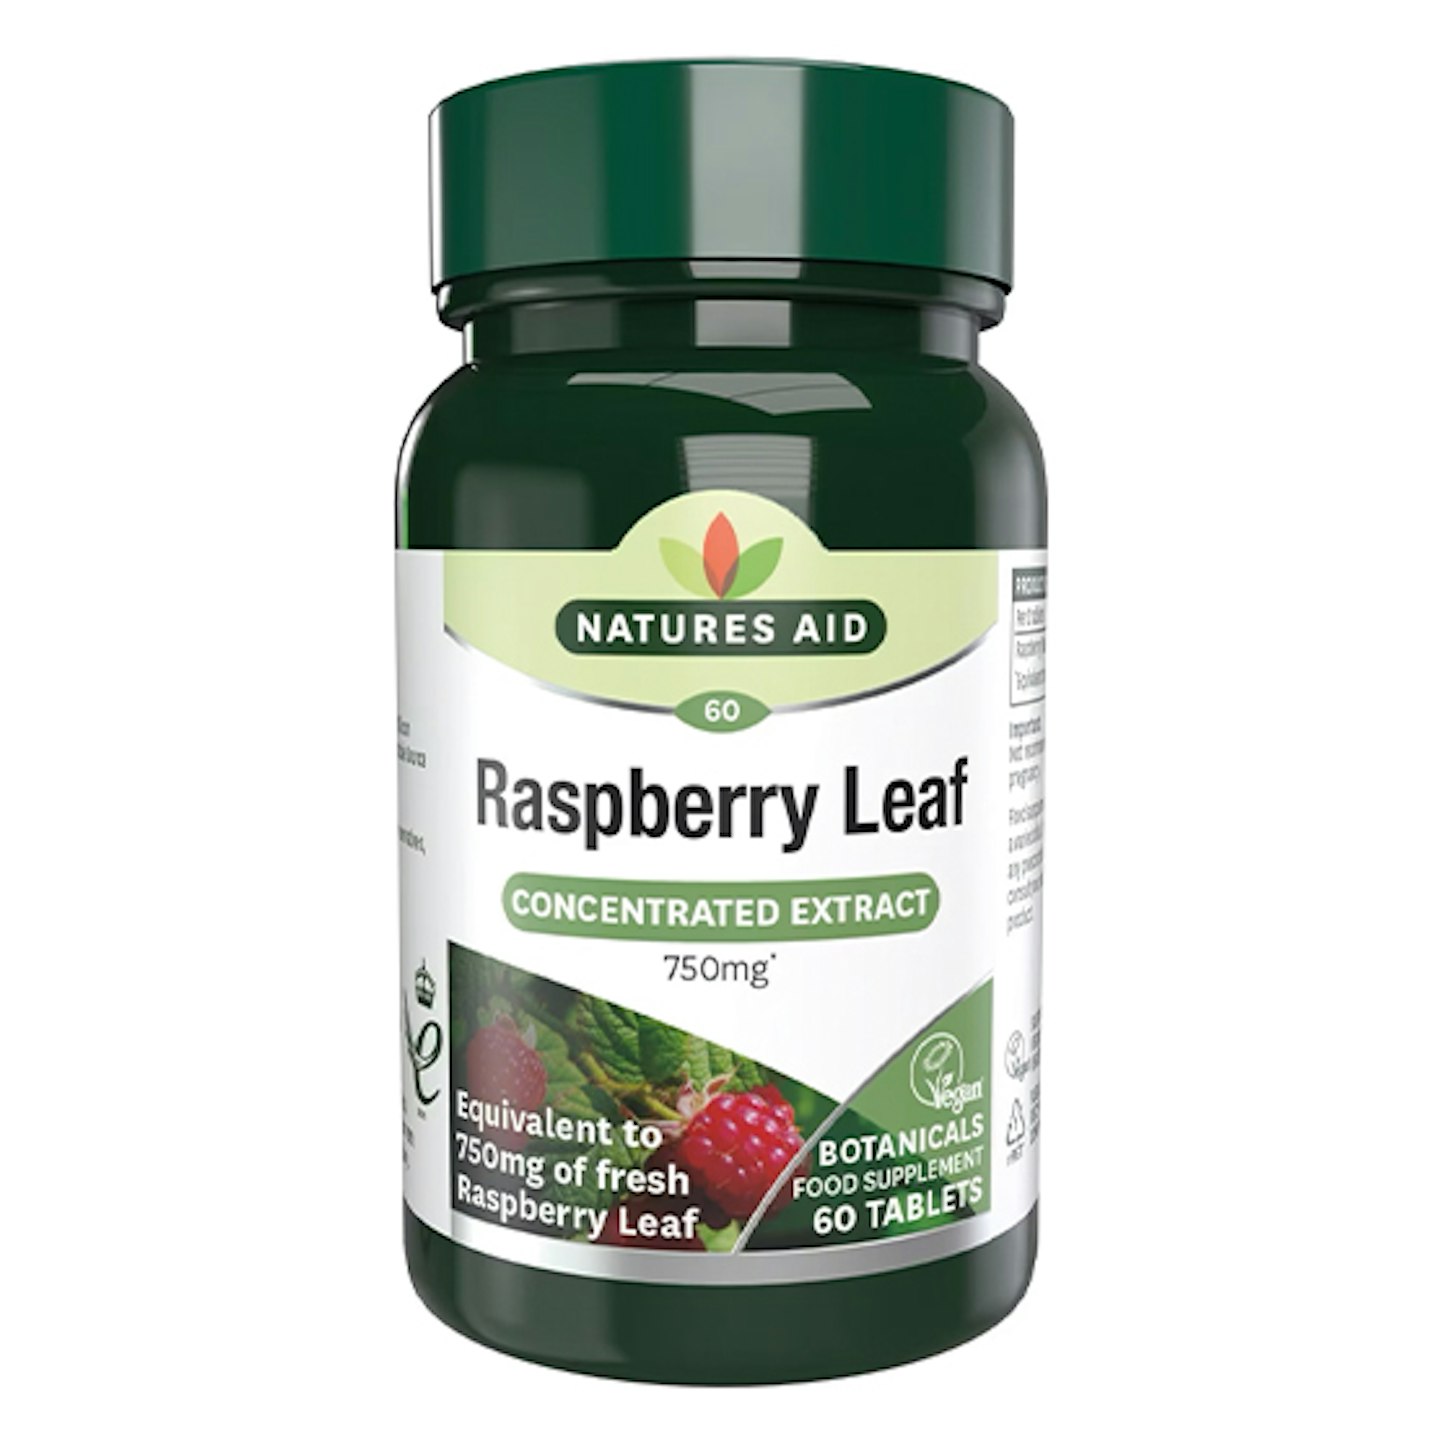 Raspberry leaf capsules